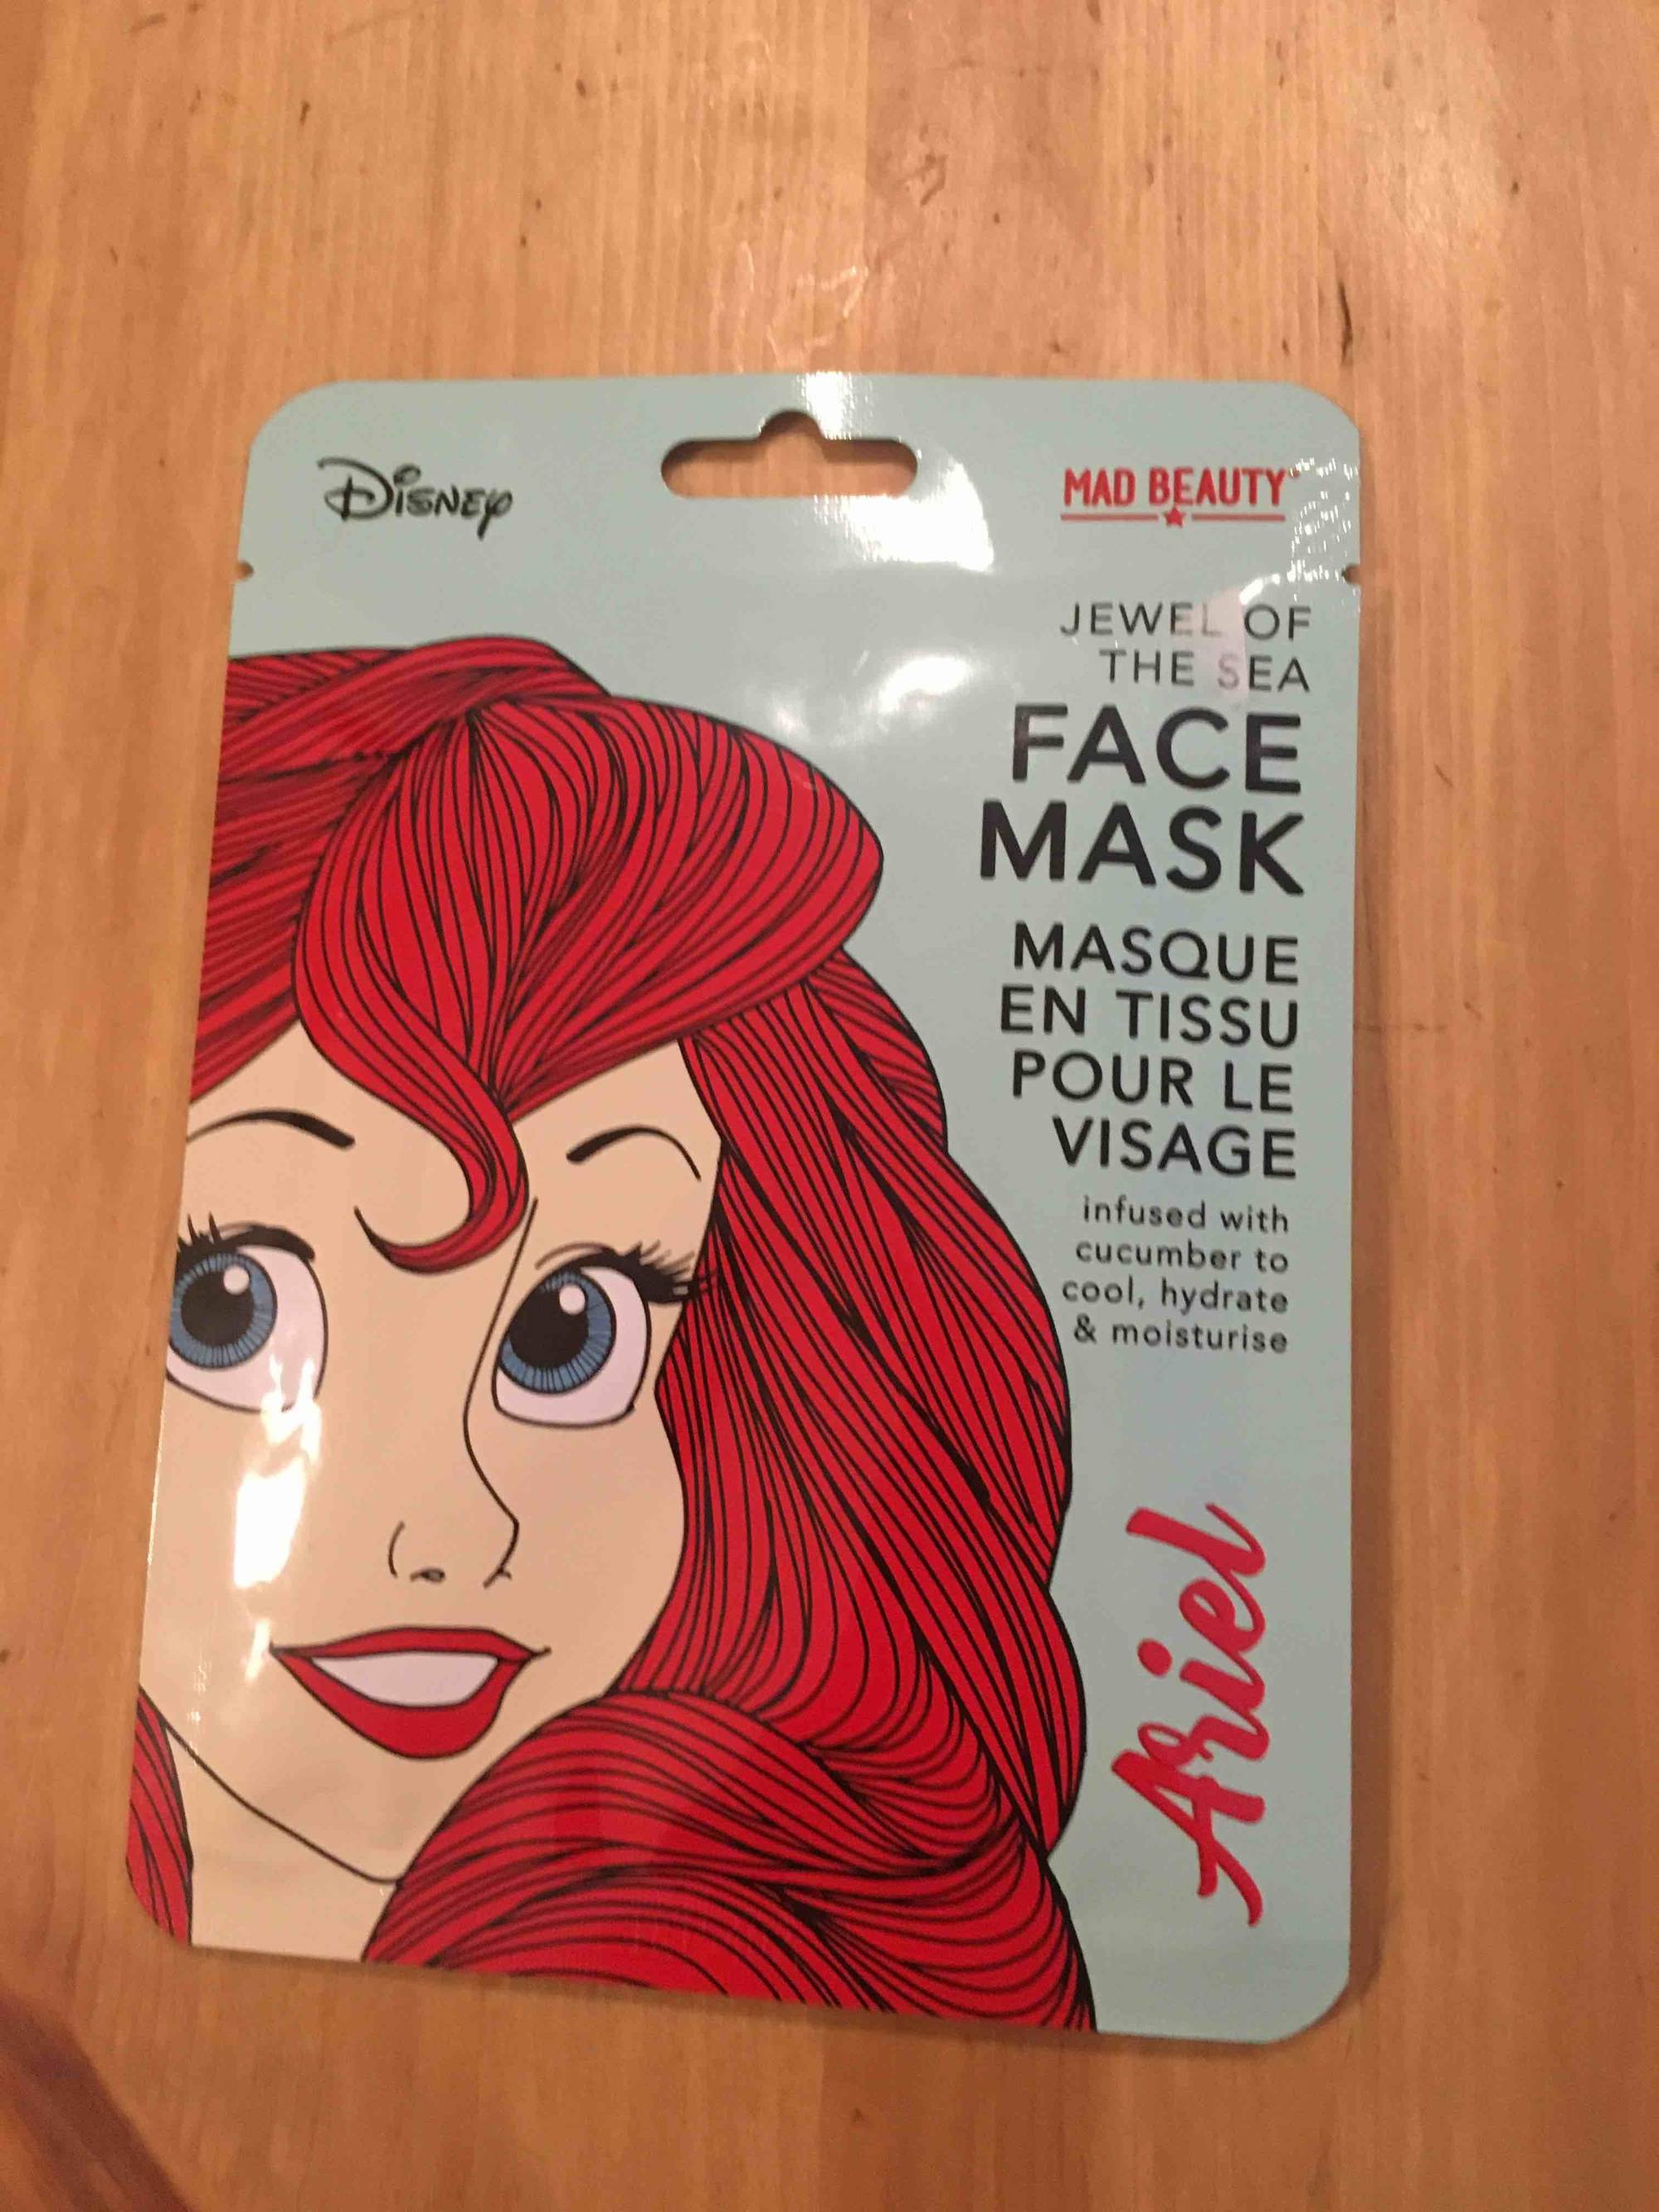 MAD BEAUTY - Disney Ariel - Masque en tissu pour le visage